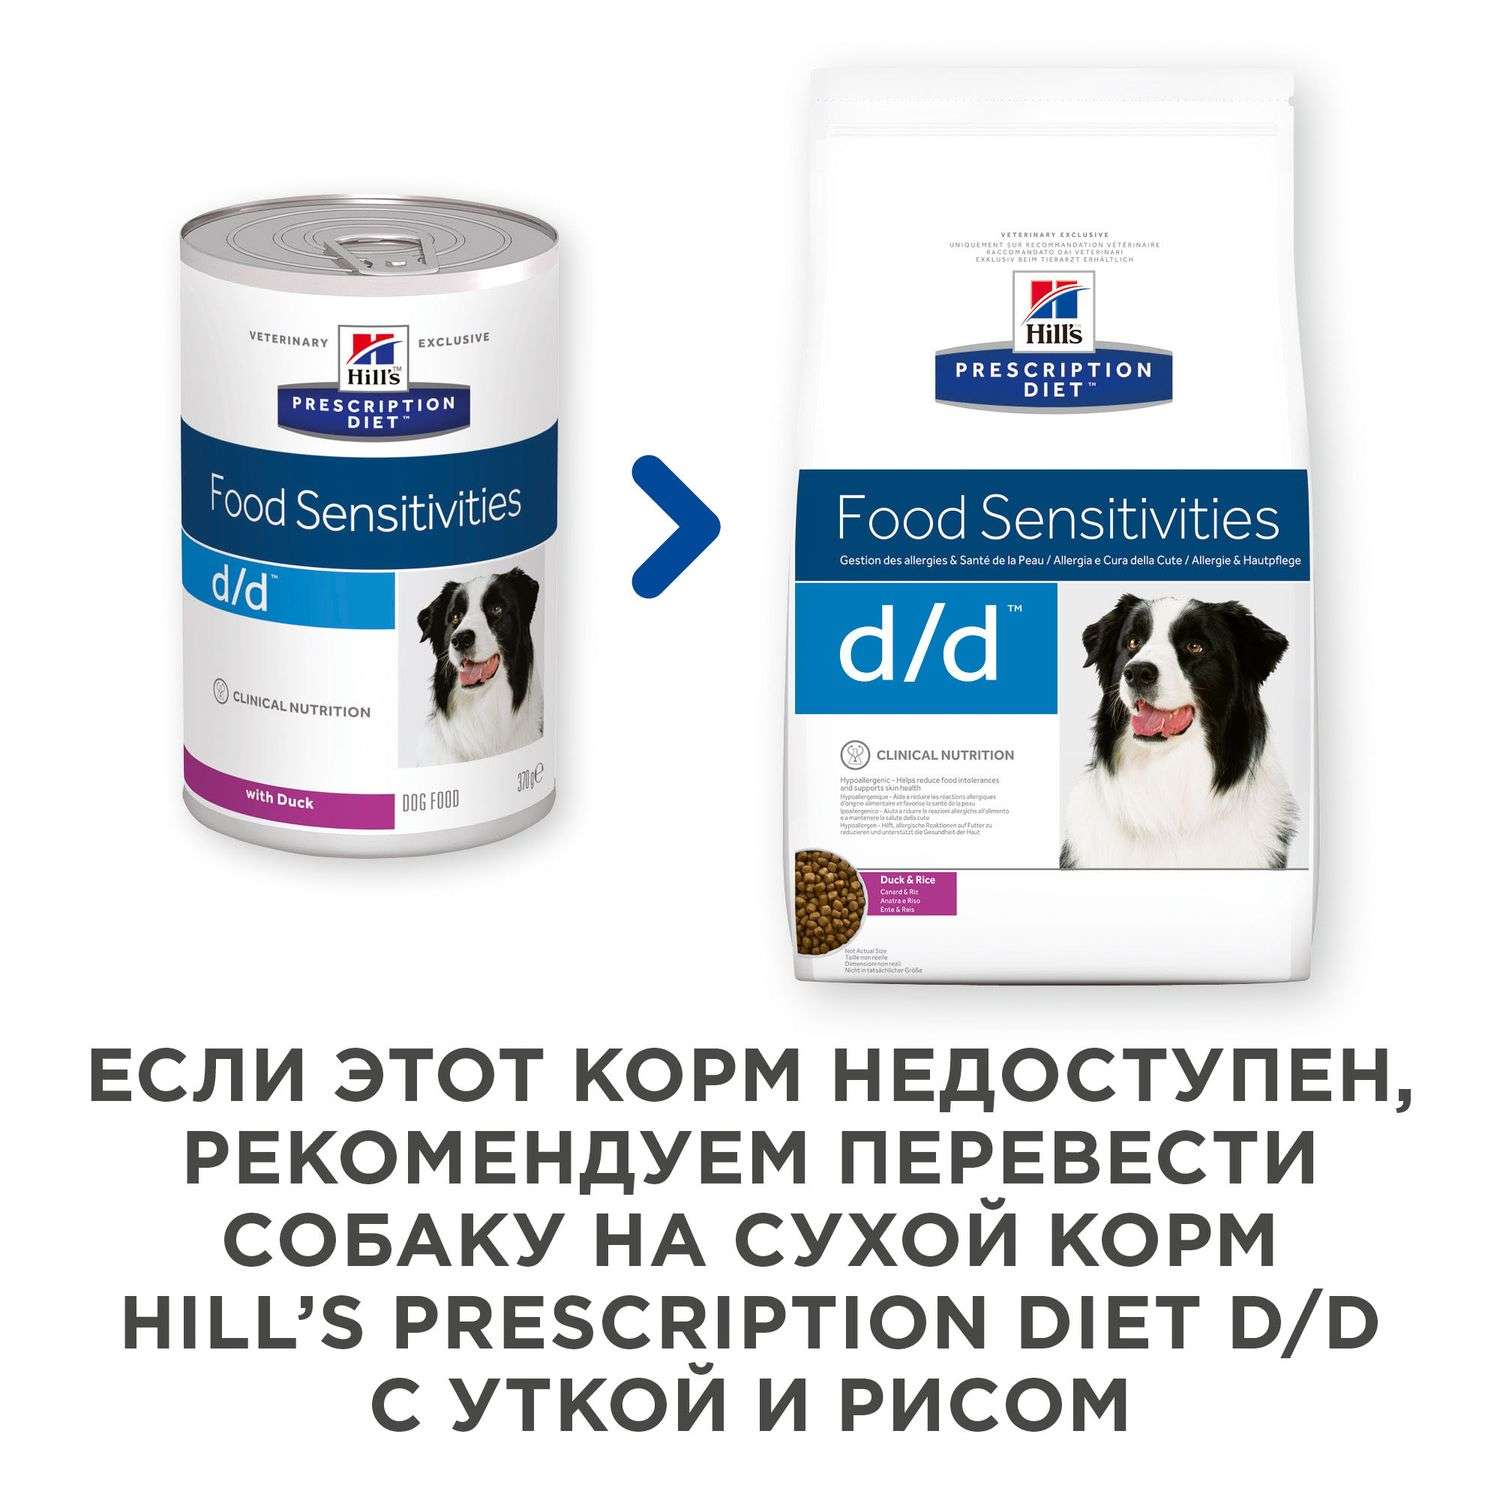 Корм для собак HILLS 370г Prescription Diet d/d Food Sensitivities для кожи при аллергии и заболеваниях кожи с уткой консервированный - фото 4